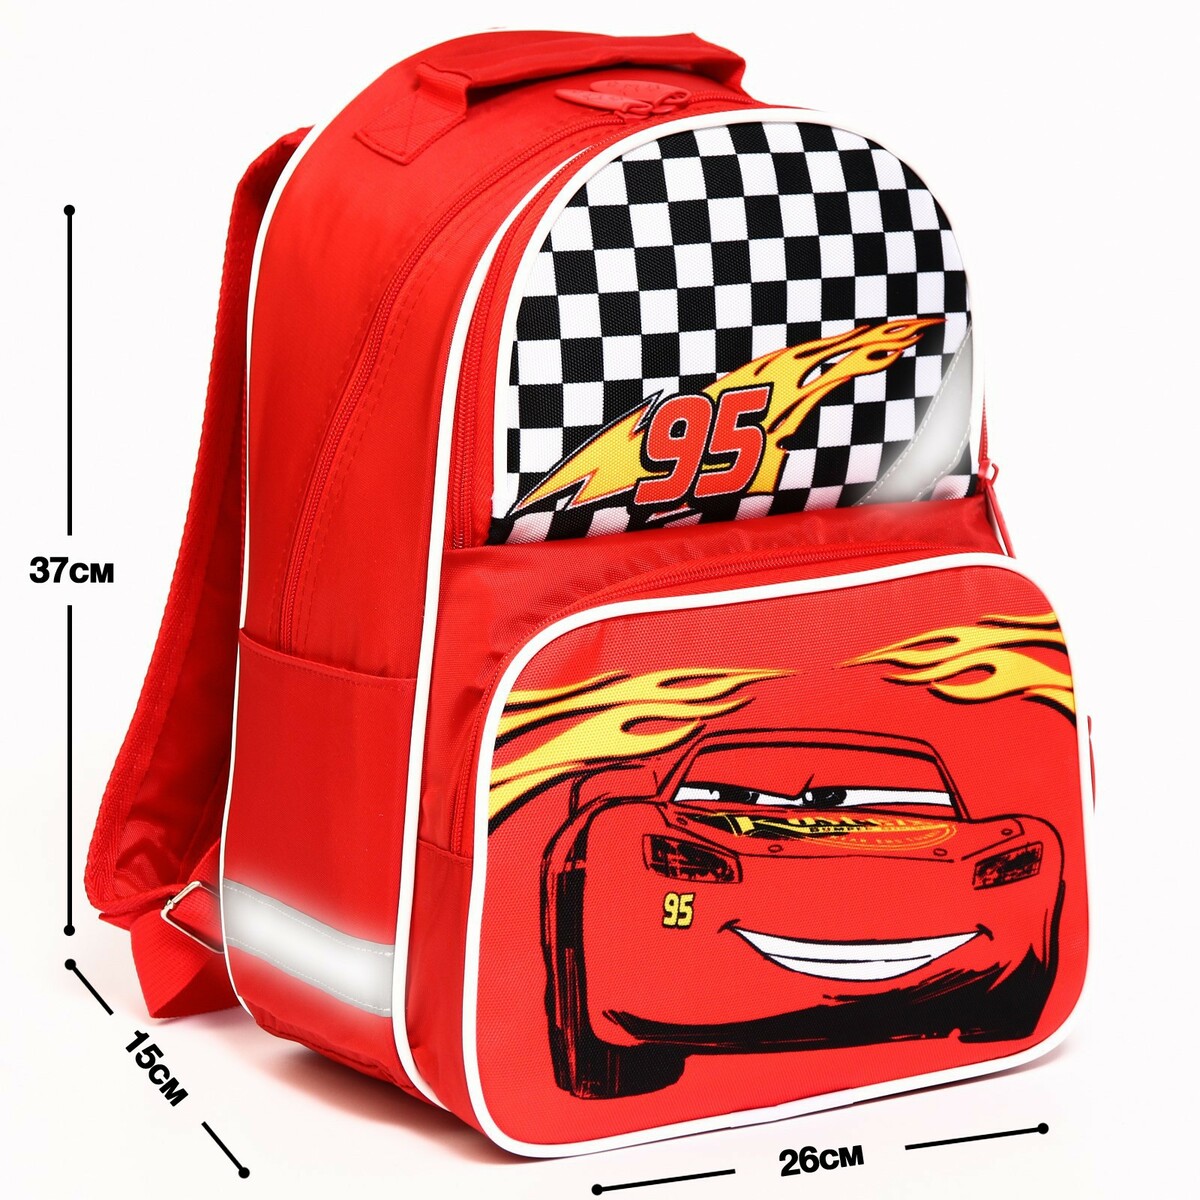 Рюкзак школьный с эргономической спинкой, 37х26х15 см, тачки Disney